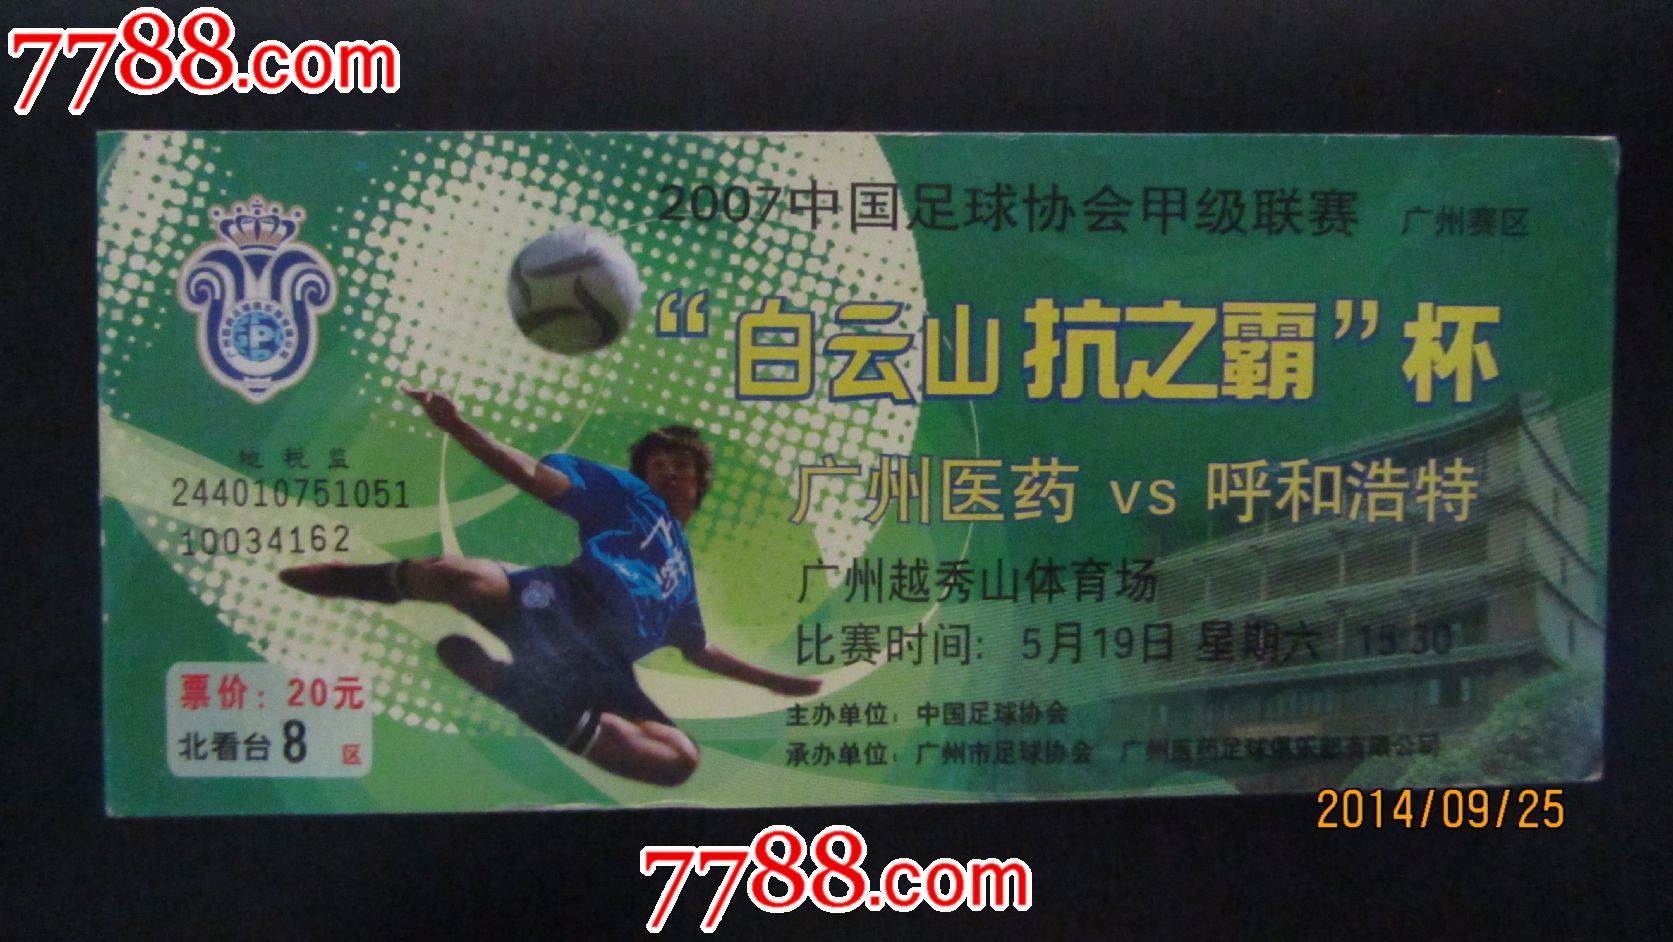 中国足球协会甲级联赛-价格:2元-se26119322-